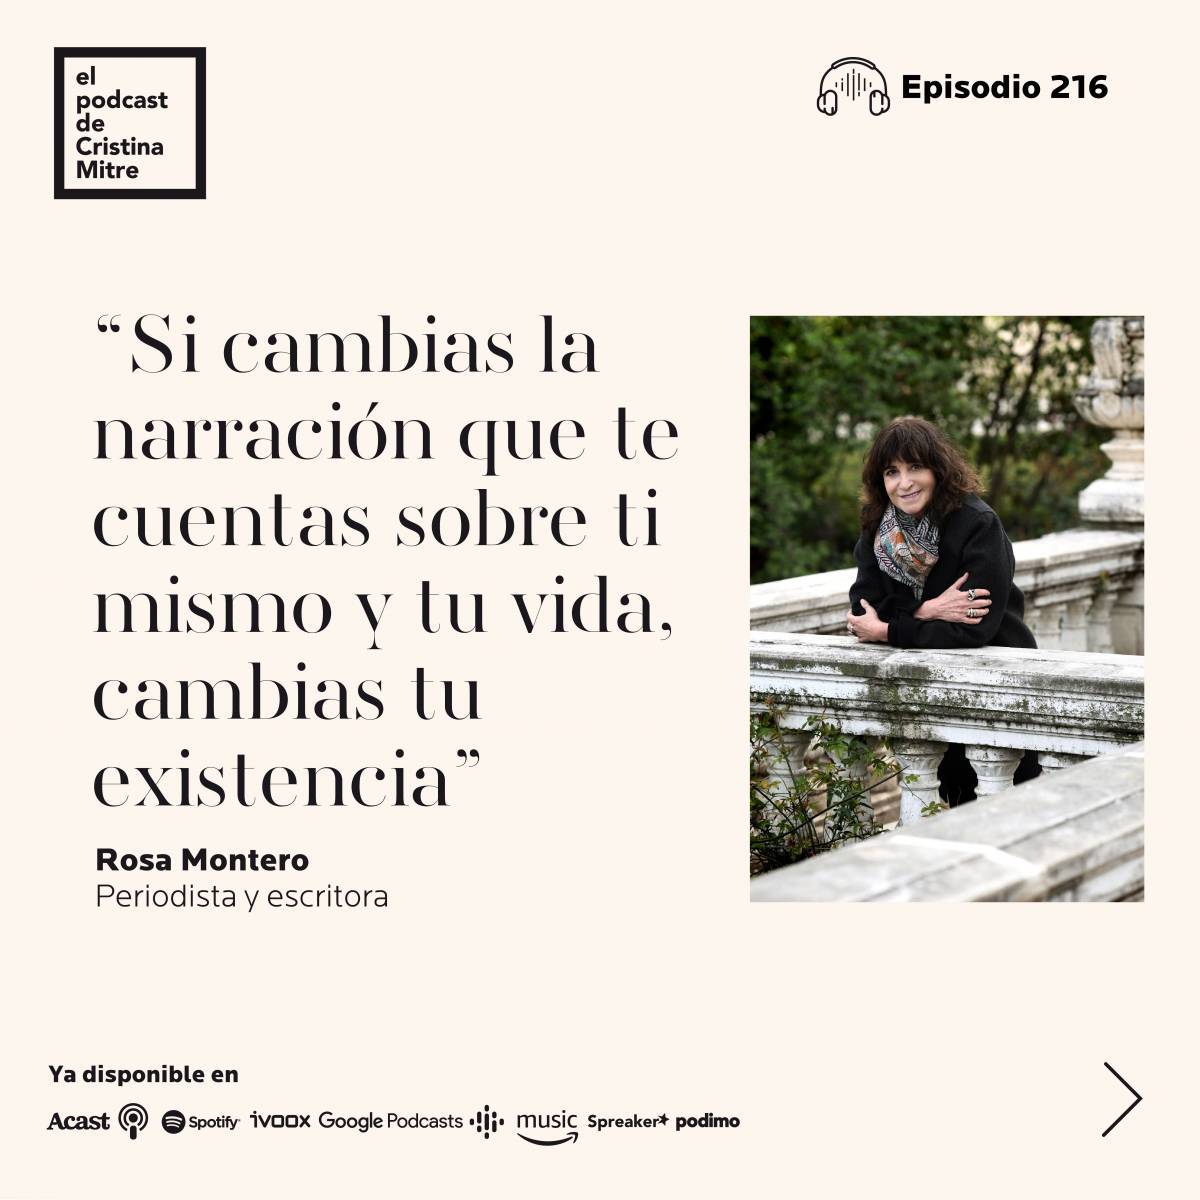 El podcast de Cristina Mitre Rosa Montero trastorno mental